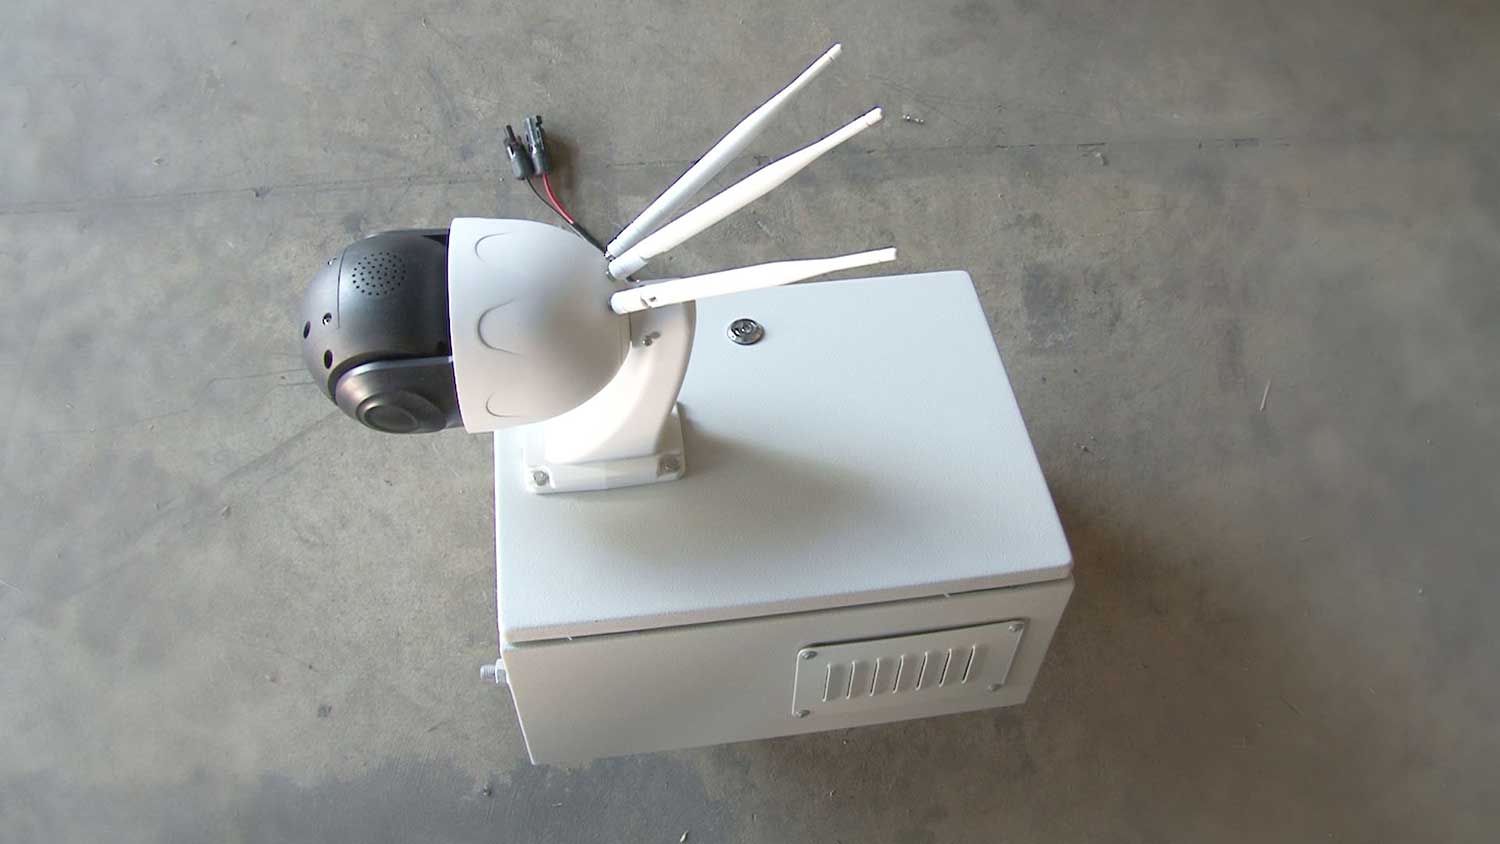 Camera Control Box